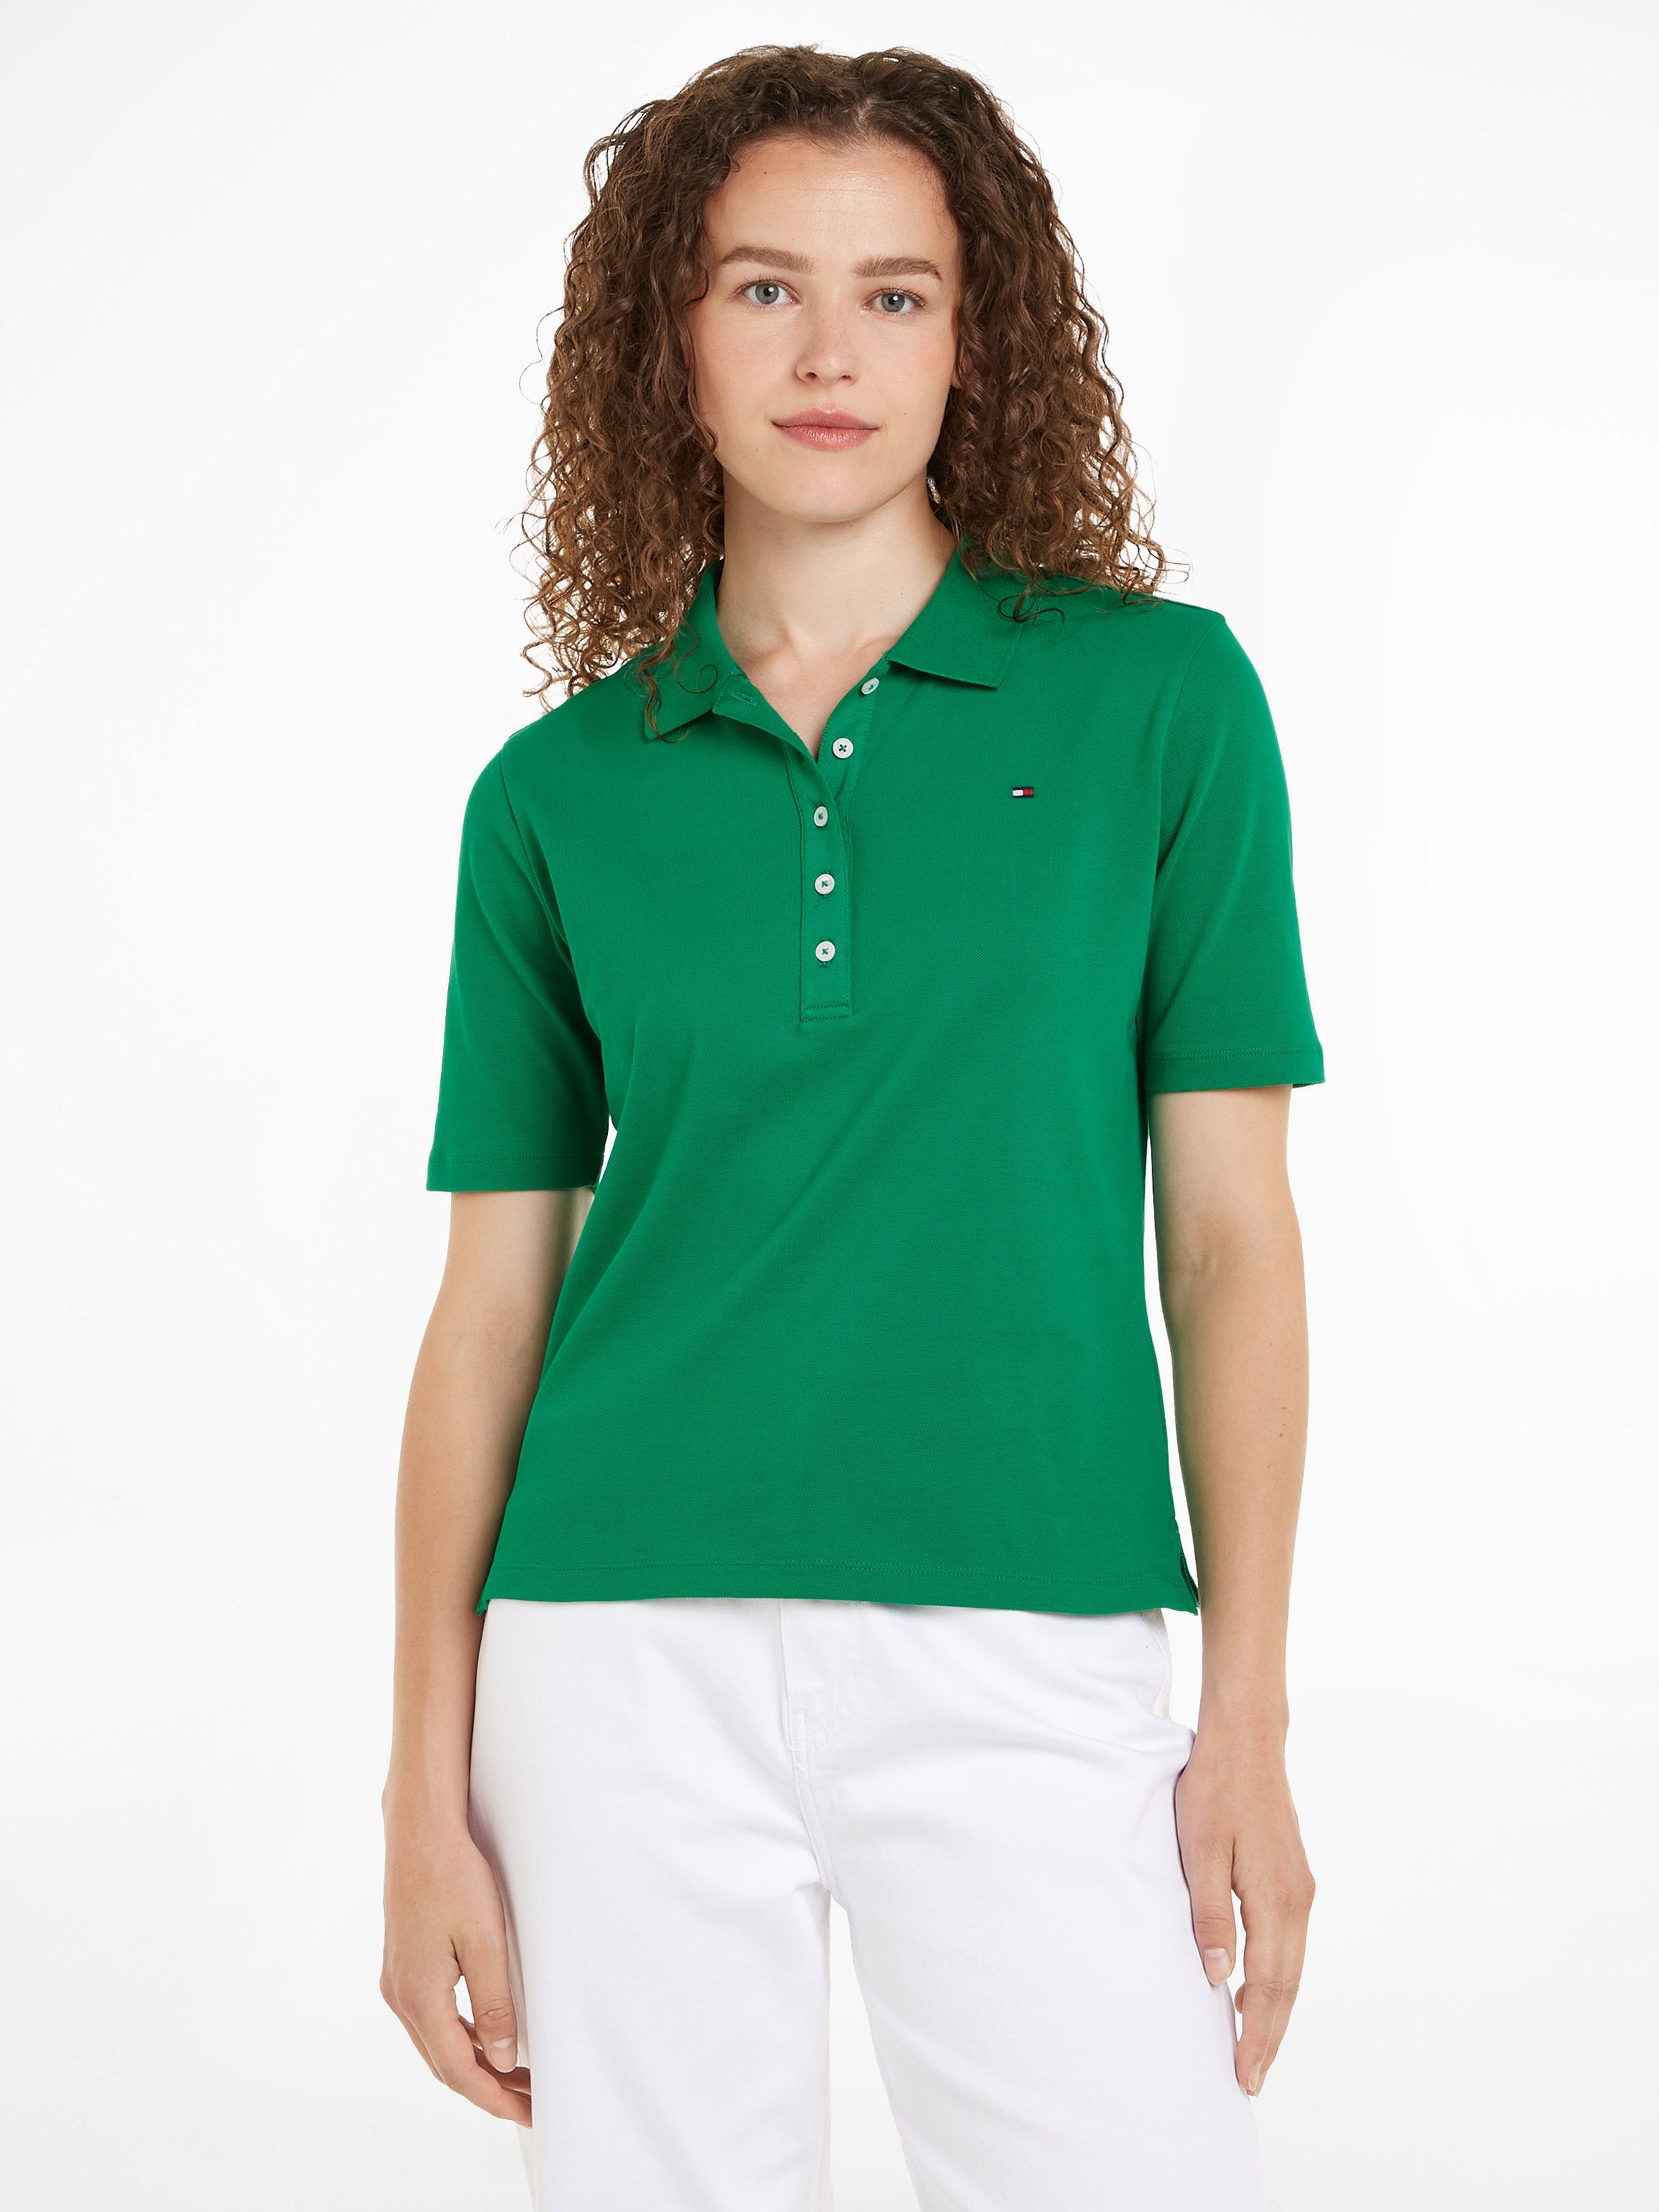 Grüne Damen Poloshirts online kaufen | OTTO